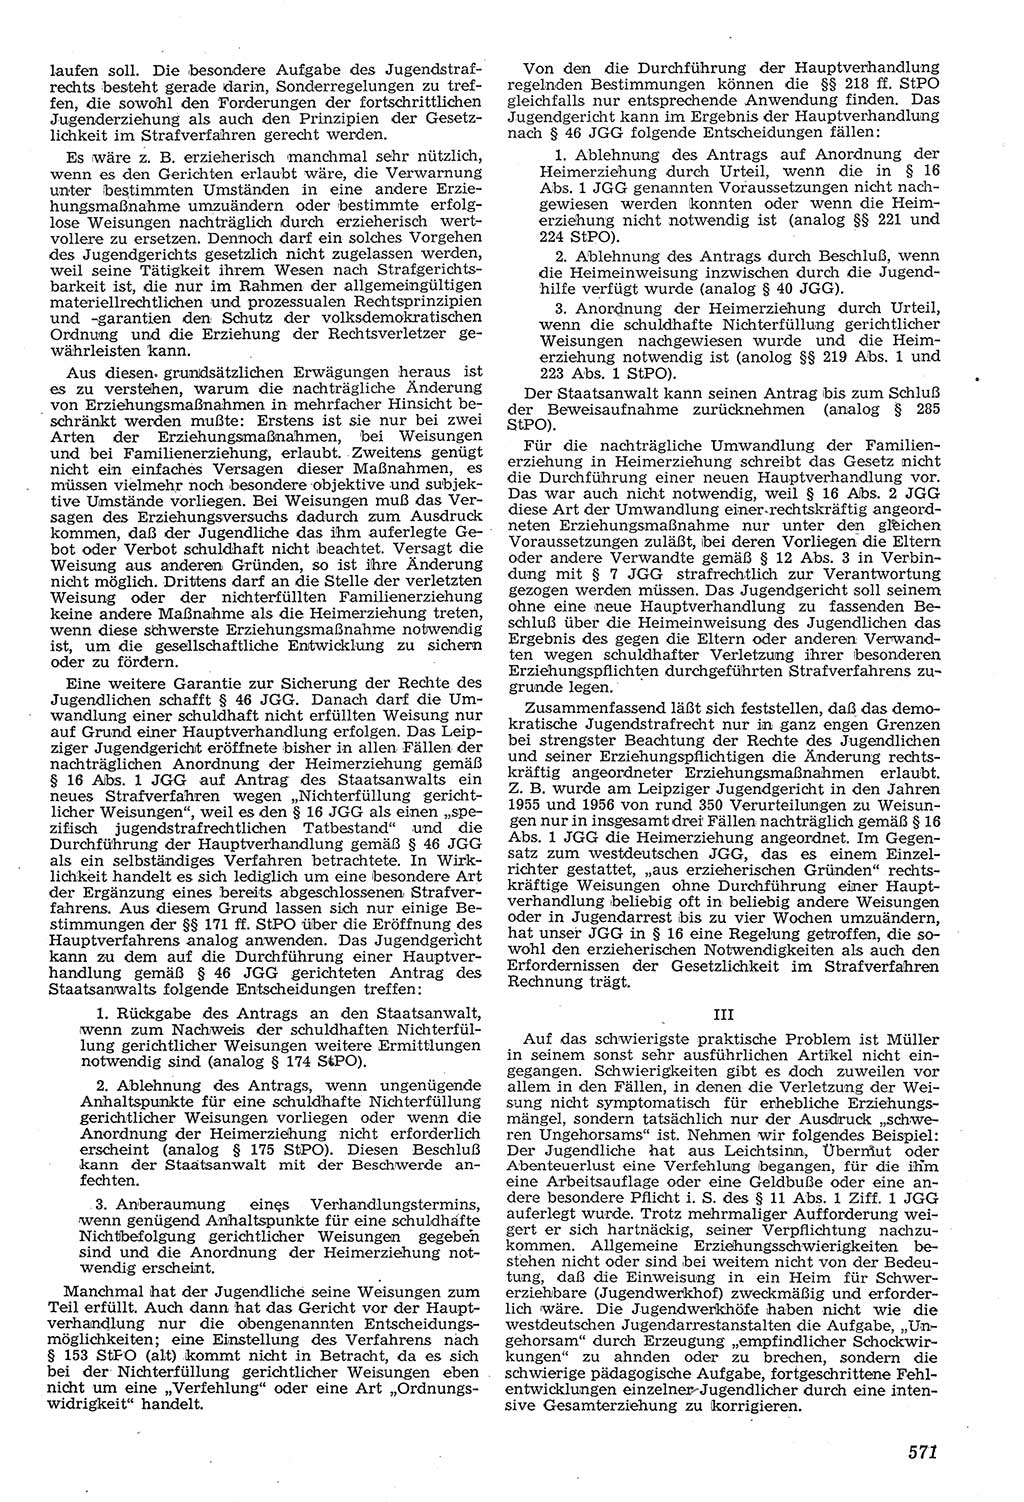 Neue Justiz (NJ), Zeitschrift für Recht und Rechtswissenschaft [Deutsche Demokratische Republik (DDR)], 11. Jahrgang 1957, Seite 571 (NJ DDR 1957, S. 571)